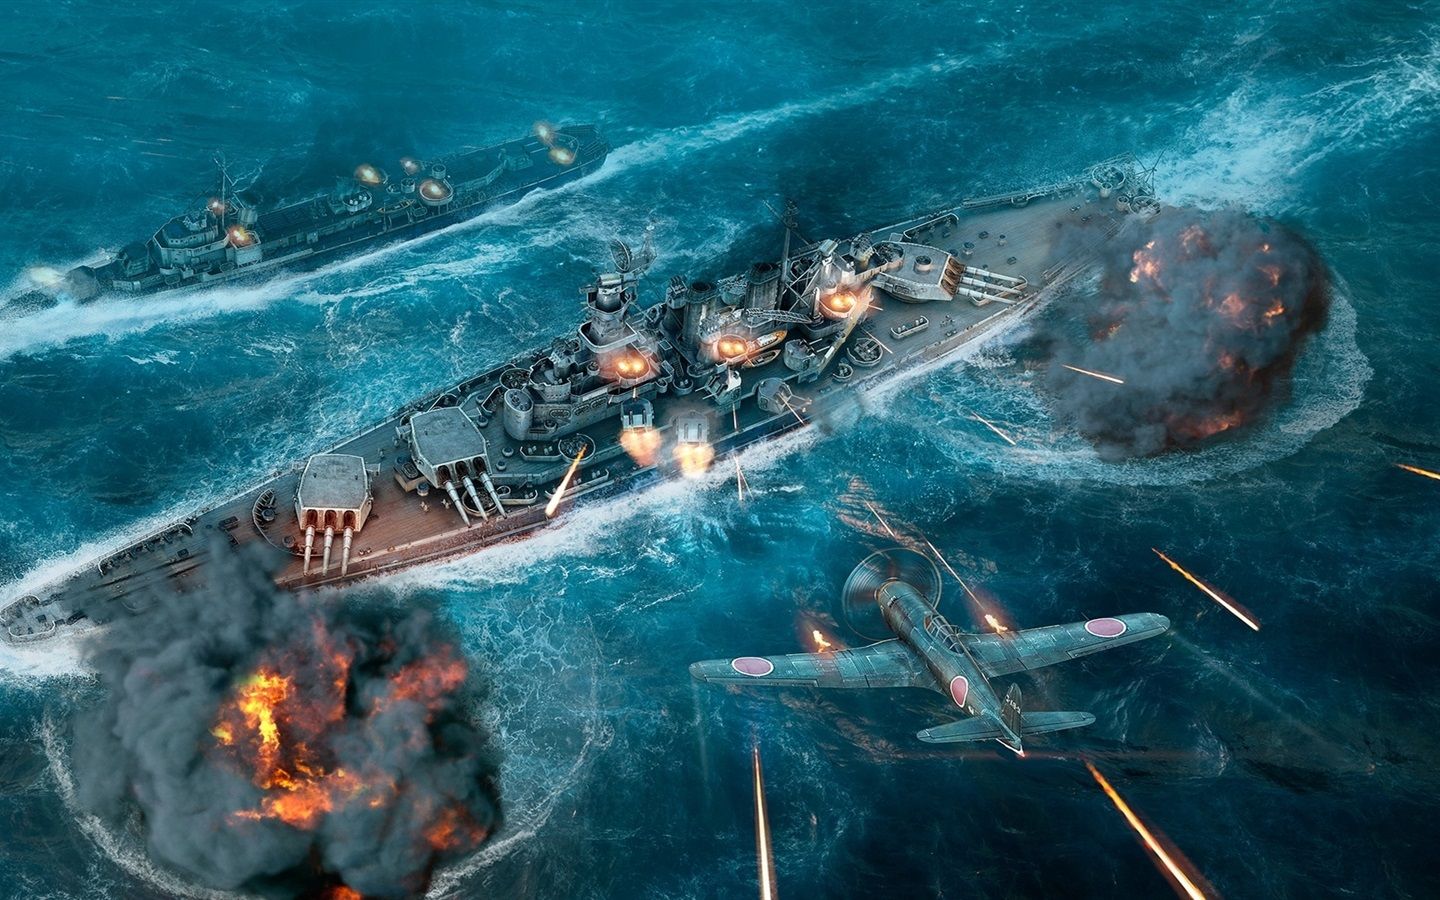 航母小讲堂 用或其他应用扫描二维码 点赞 相关游戏: 战舰世界闪电战